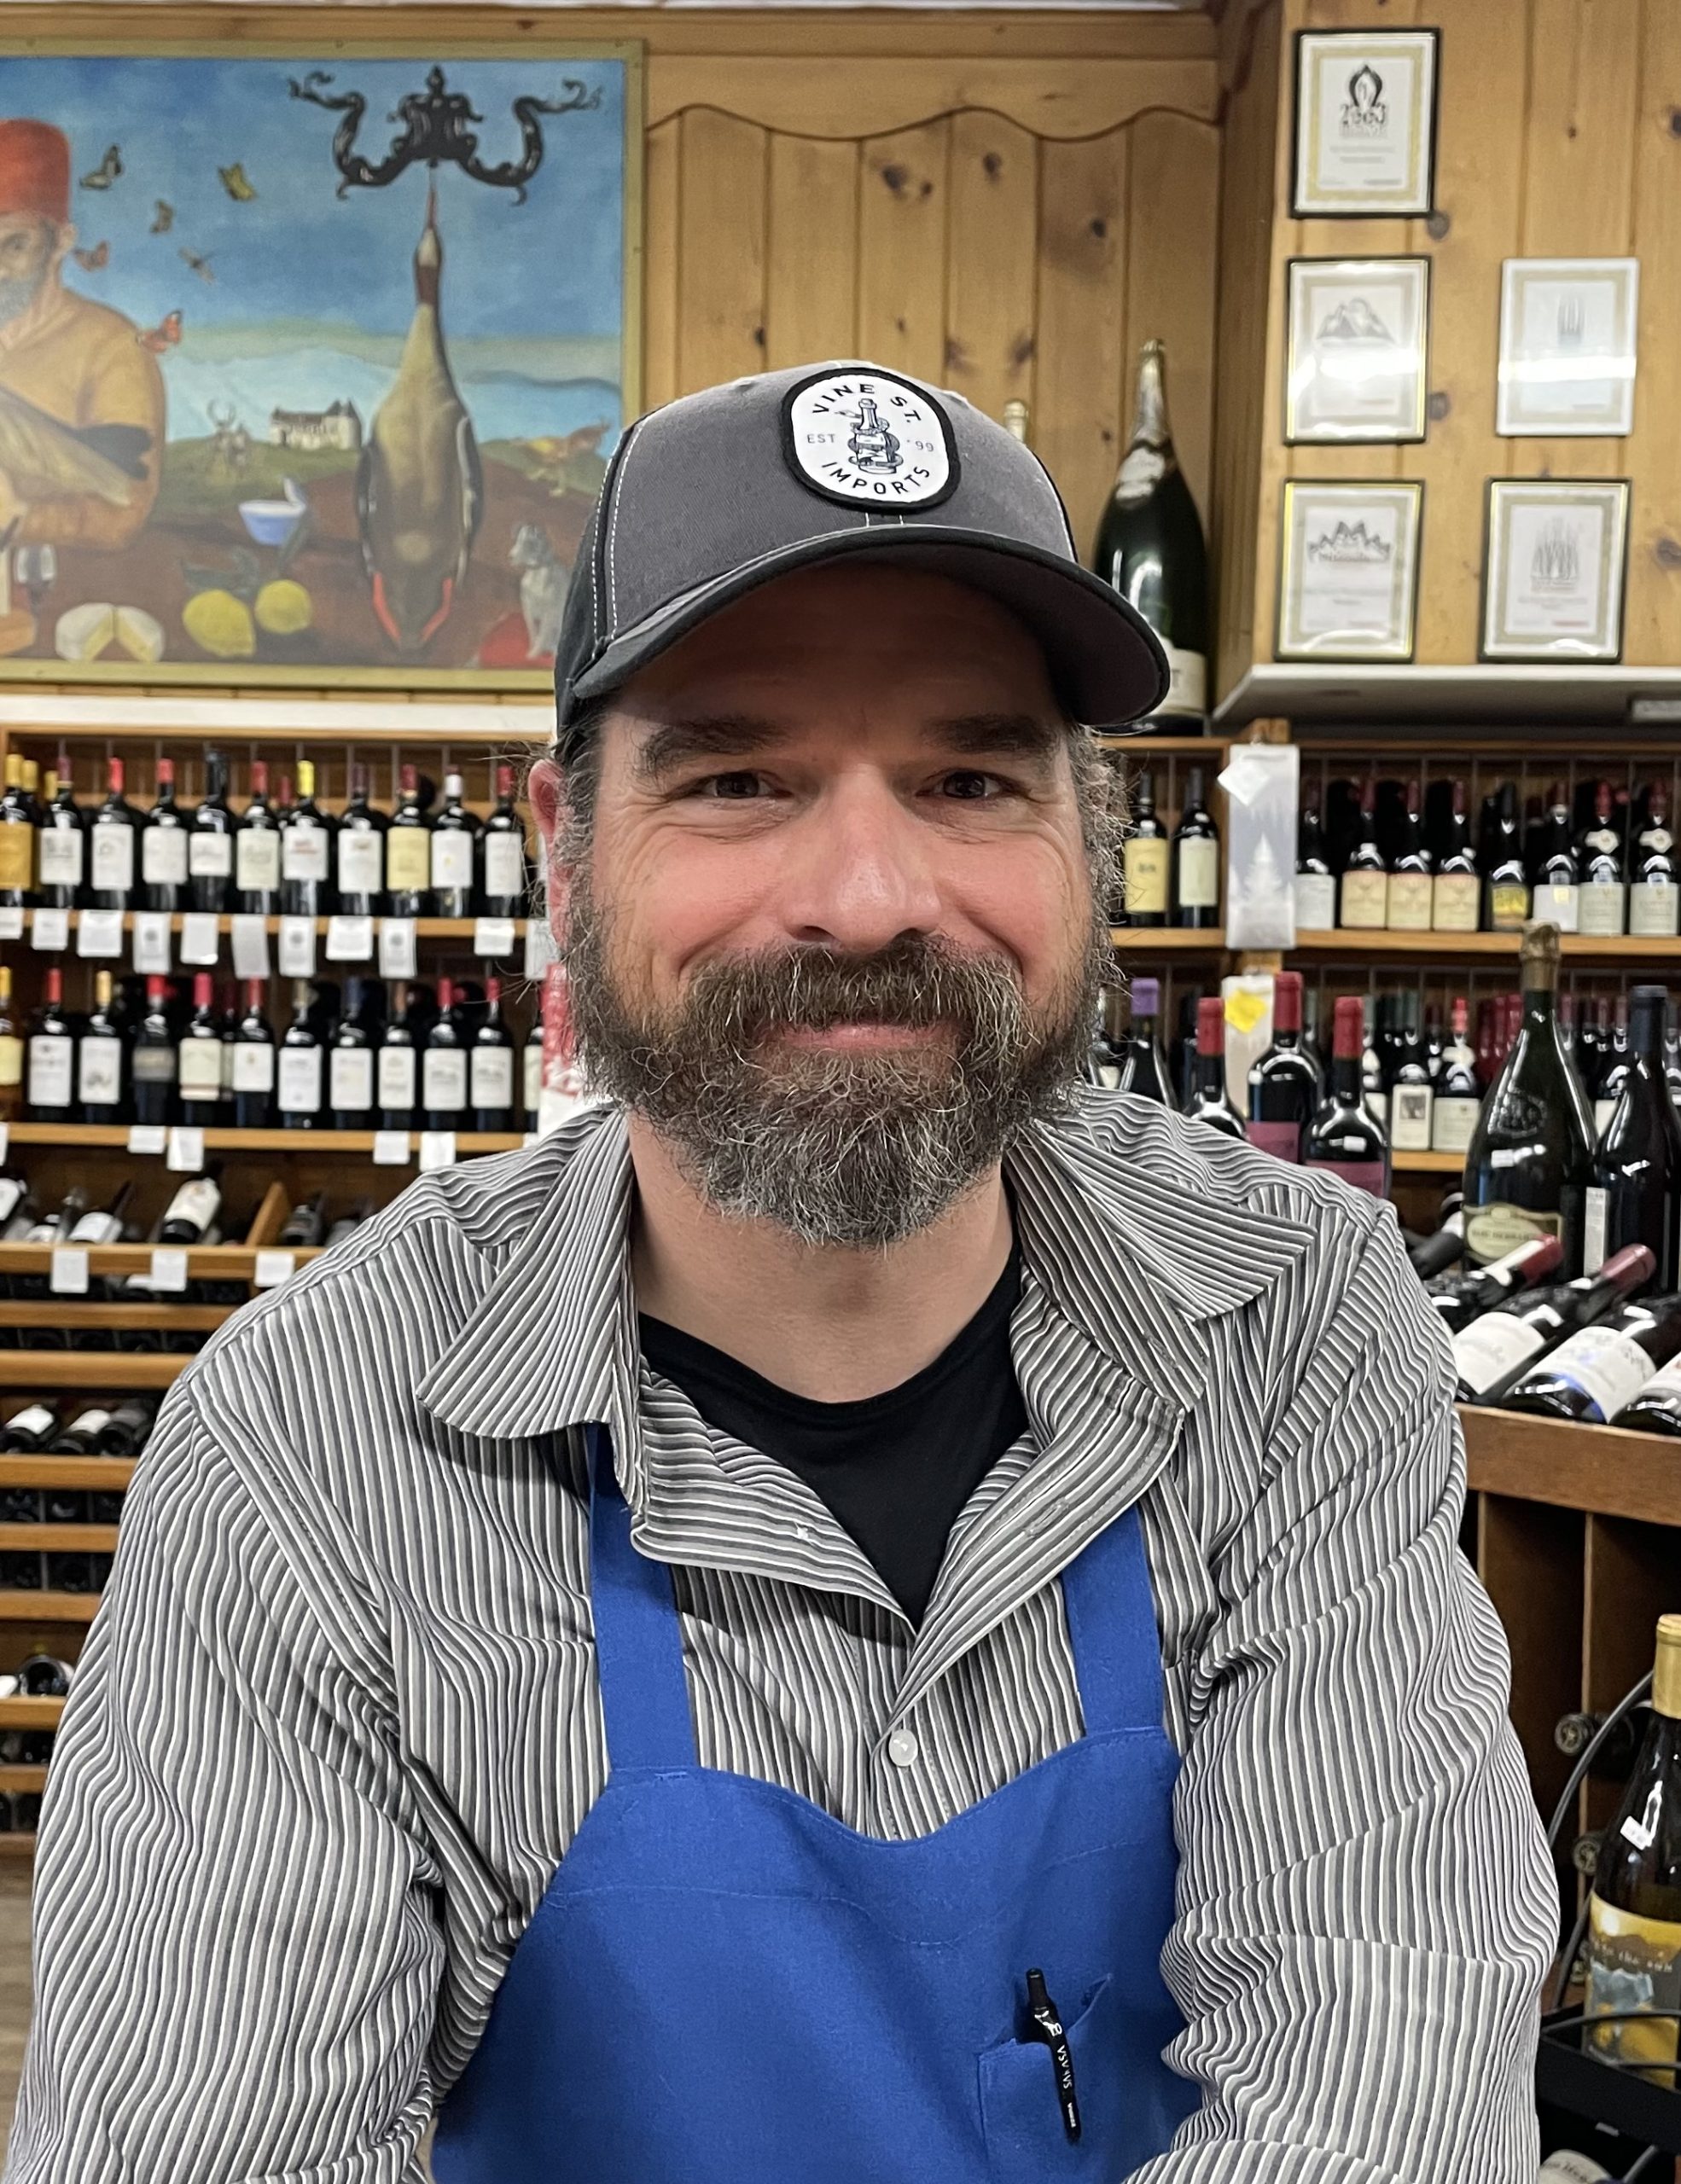 Wordens Market Wine Steward